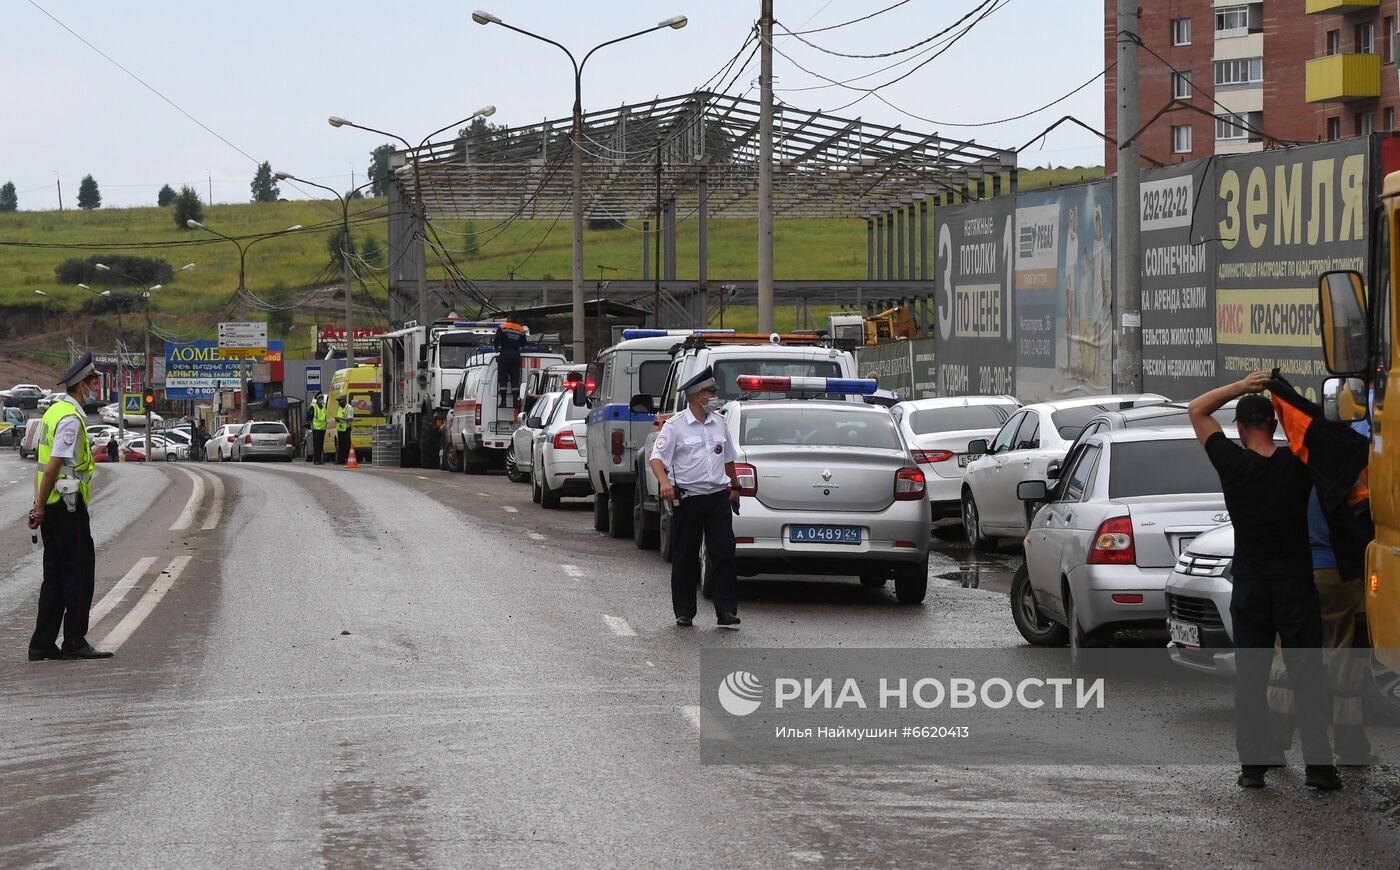 В Красноярске стена рухнула на припаркованные машины